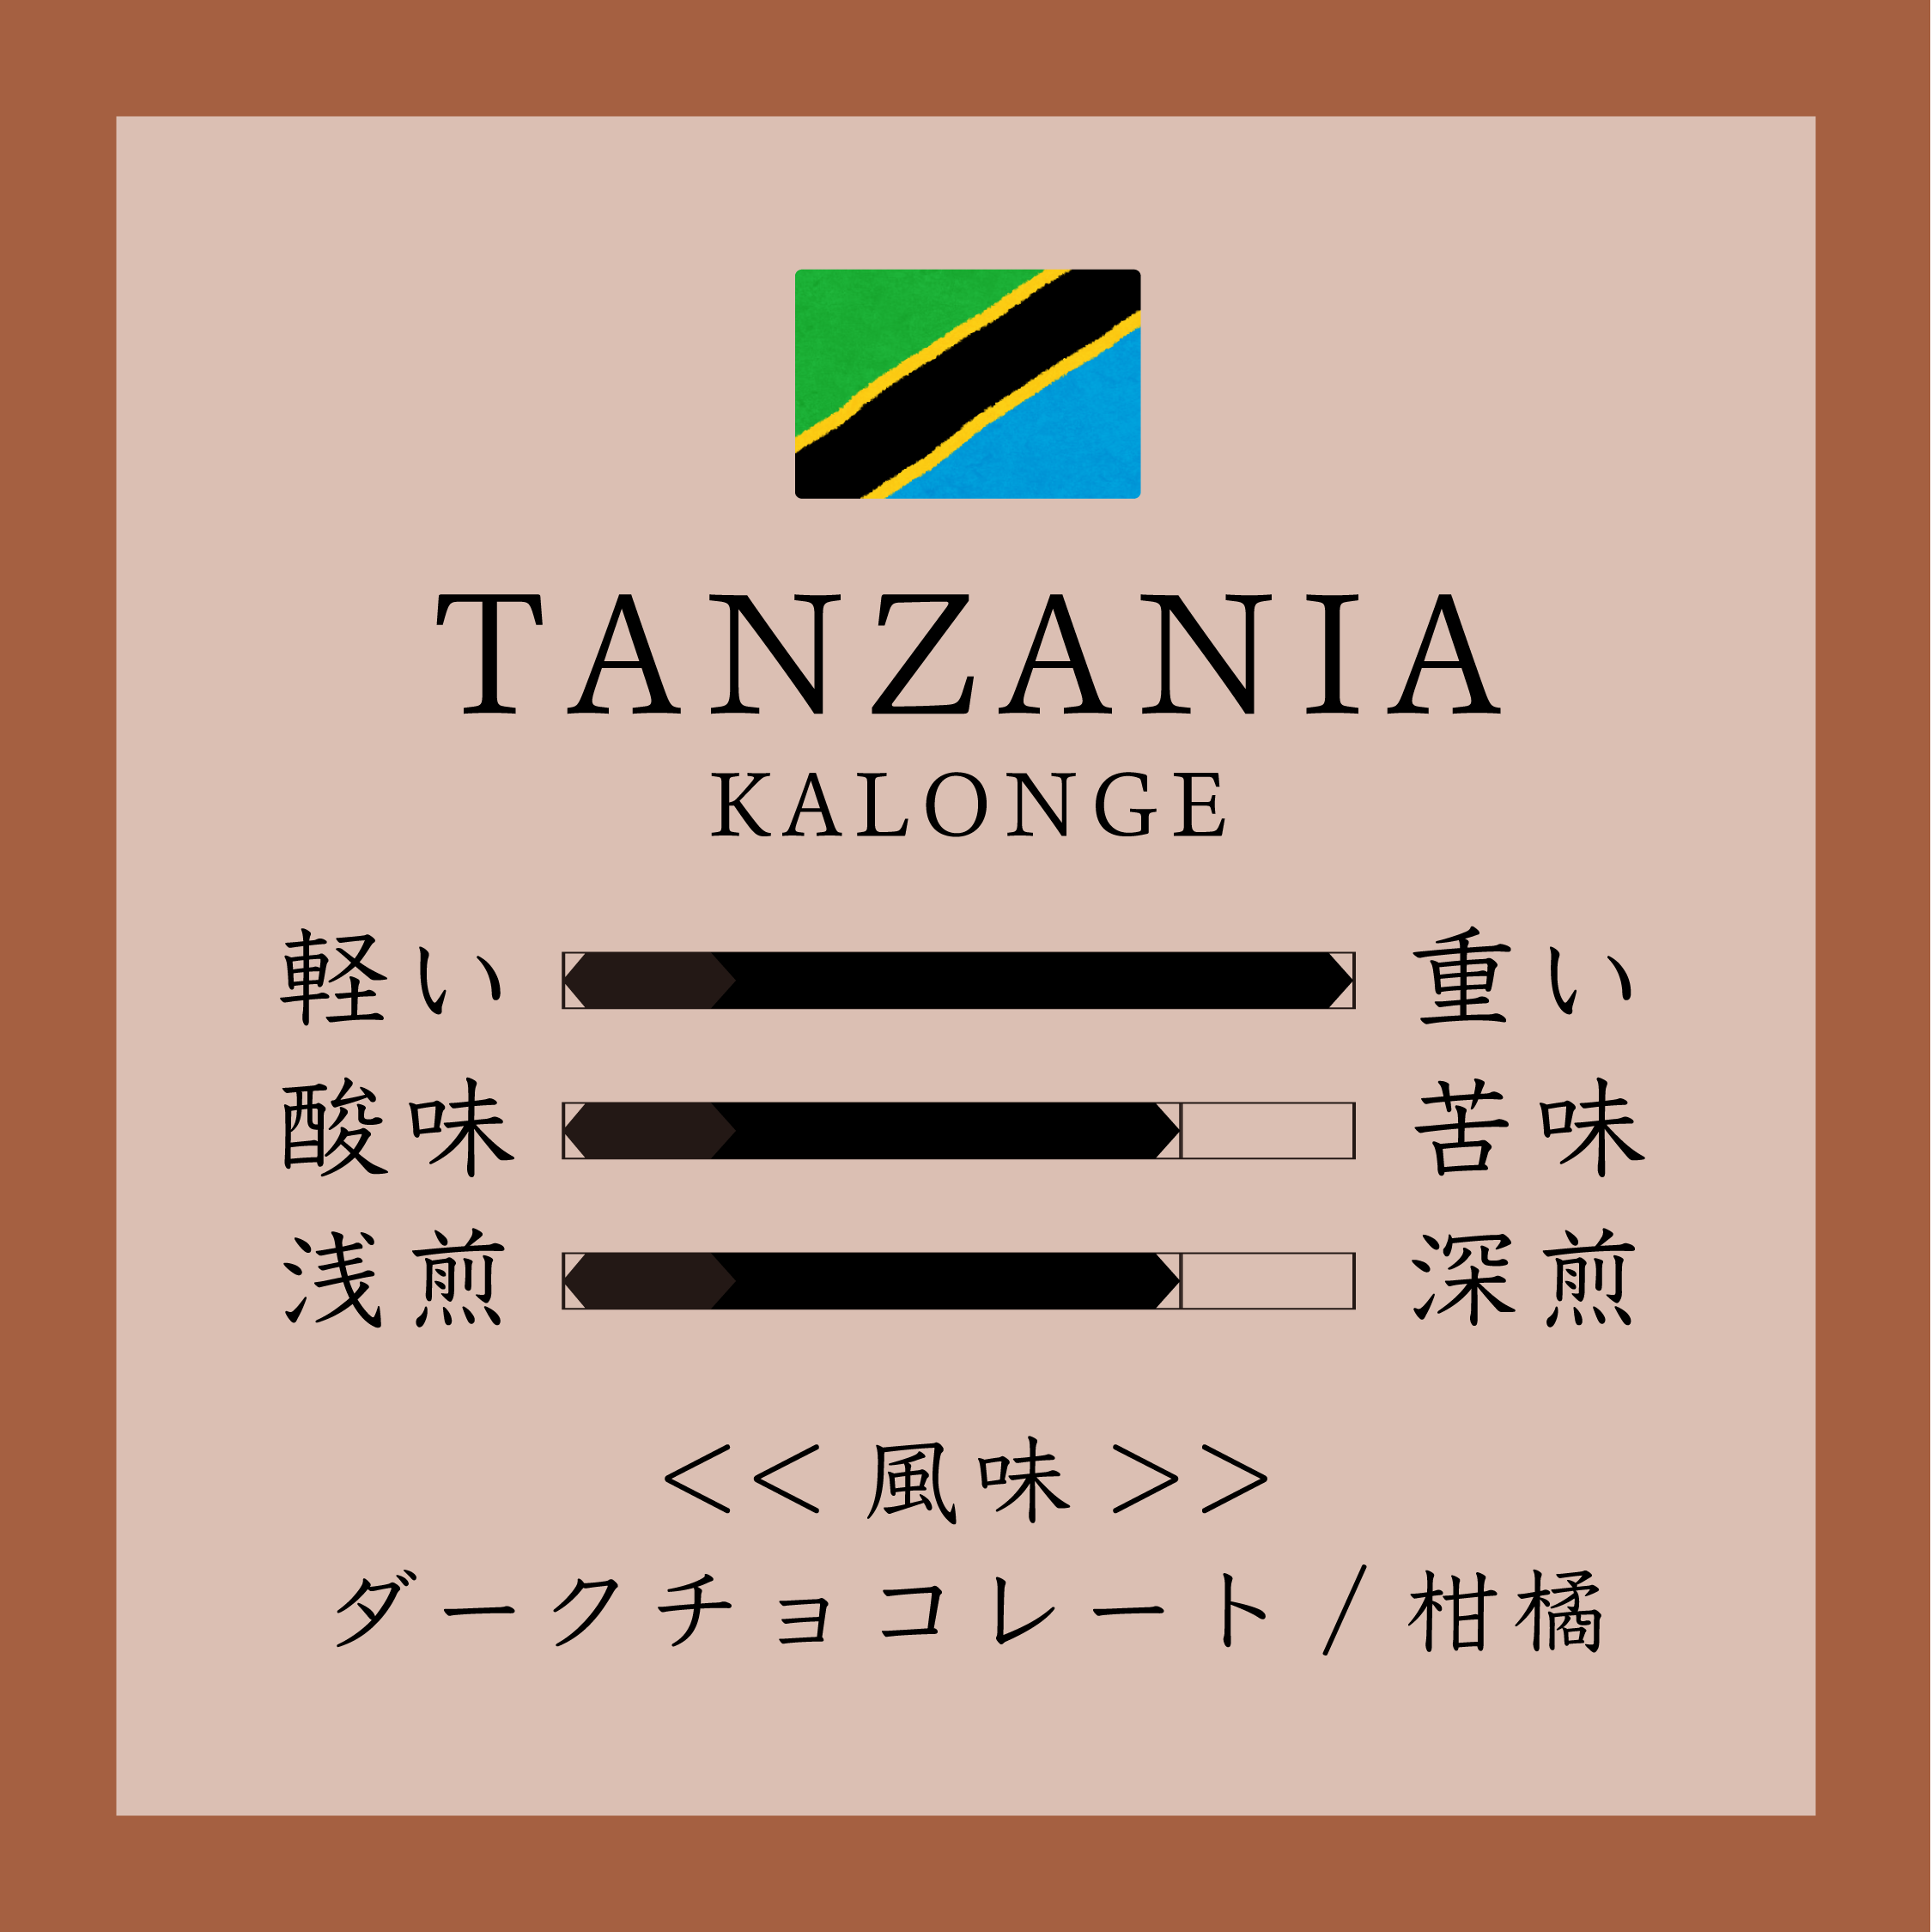 Tanzania Kalonge 150g